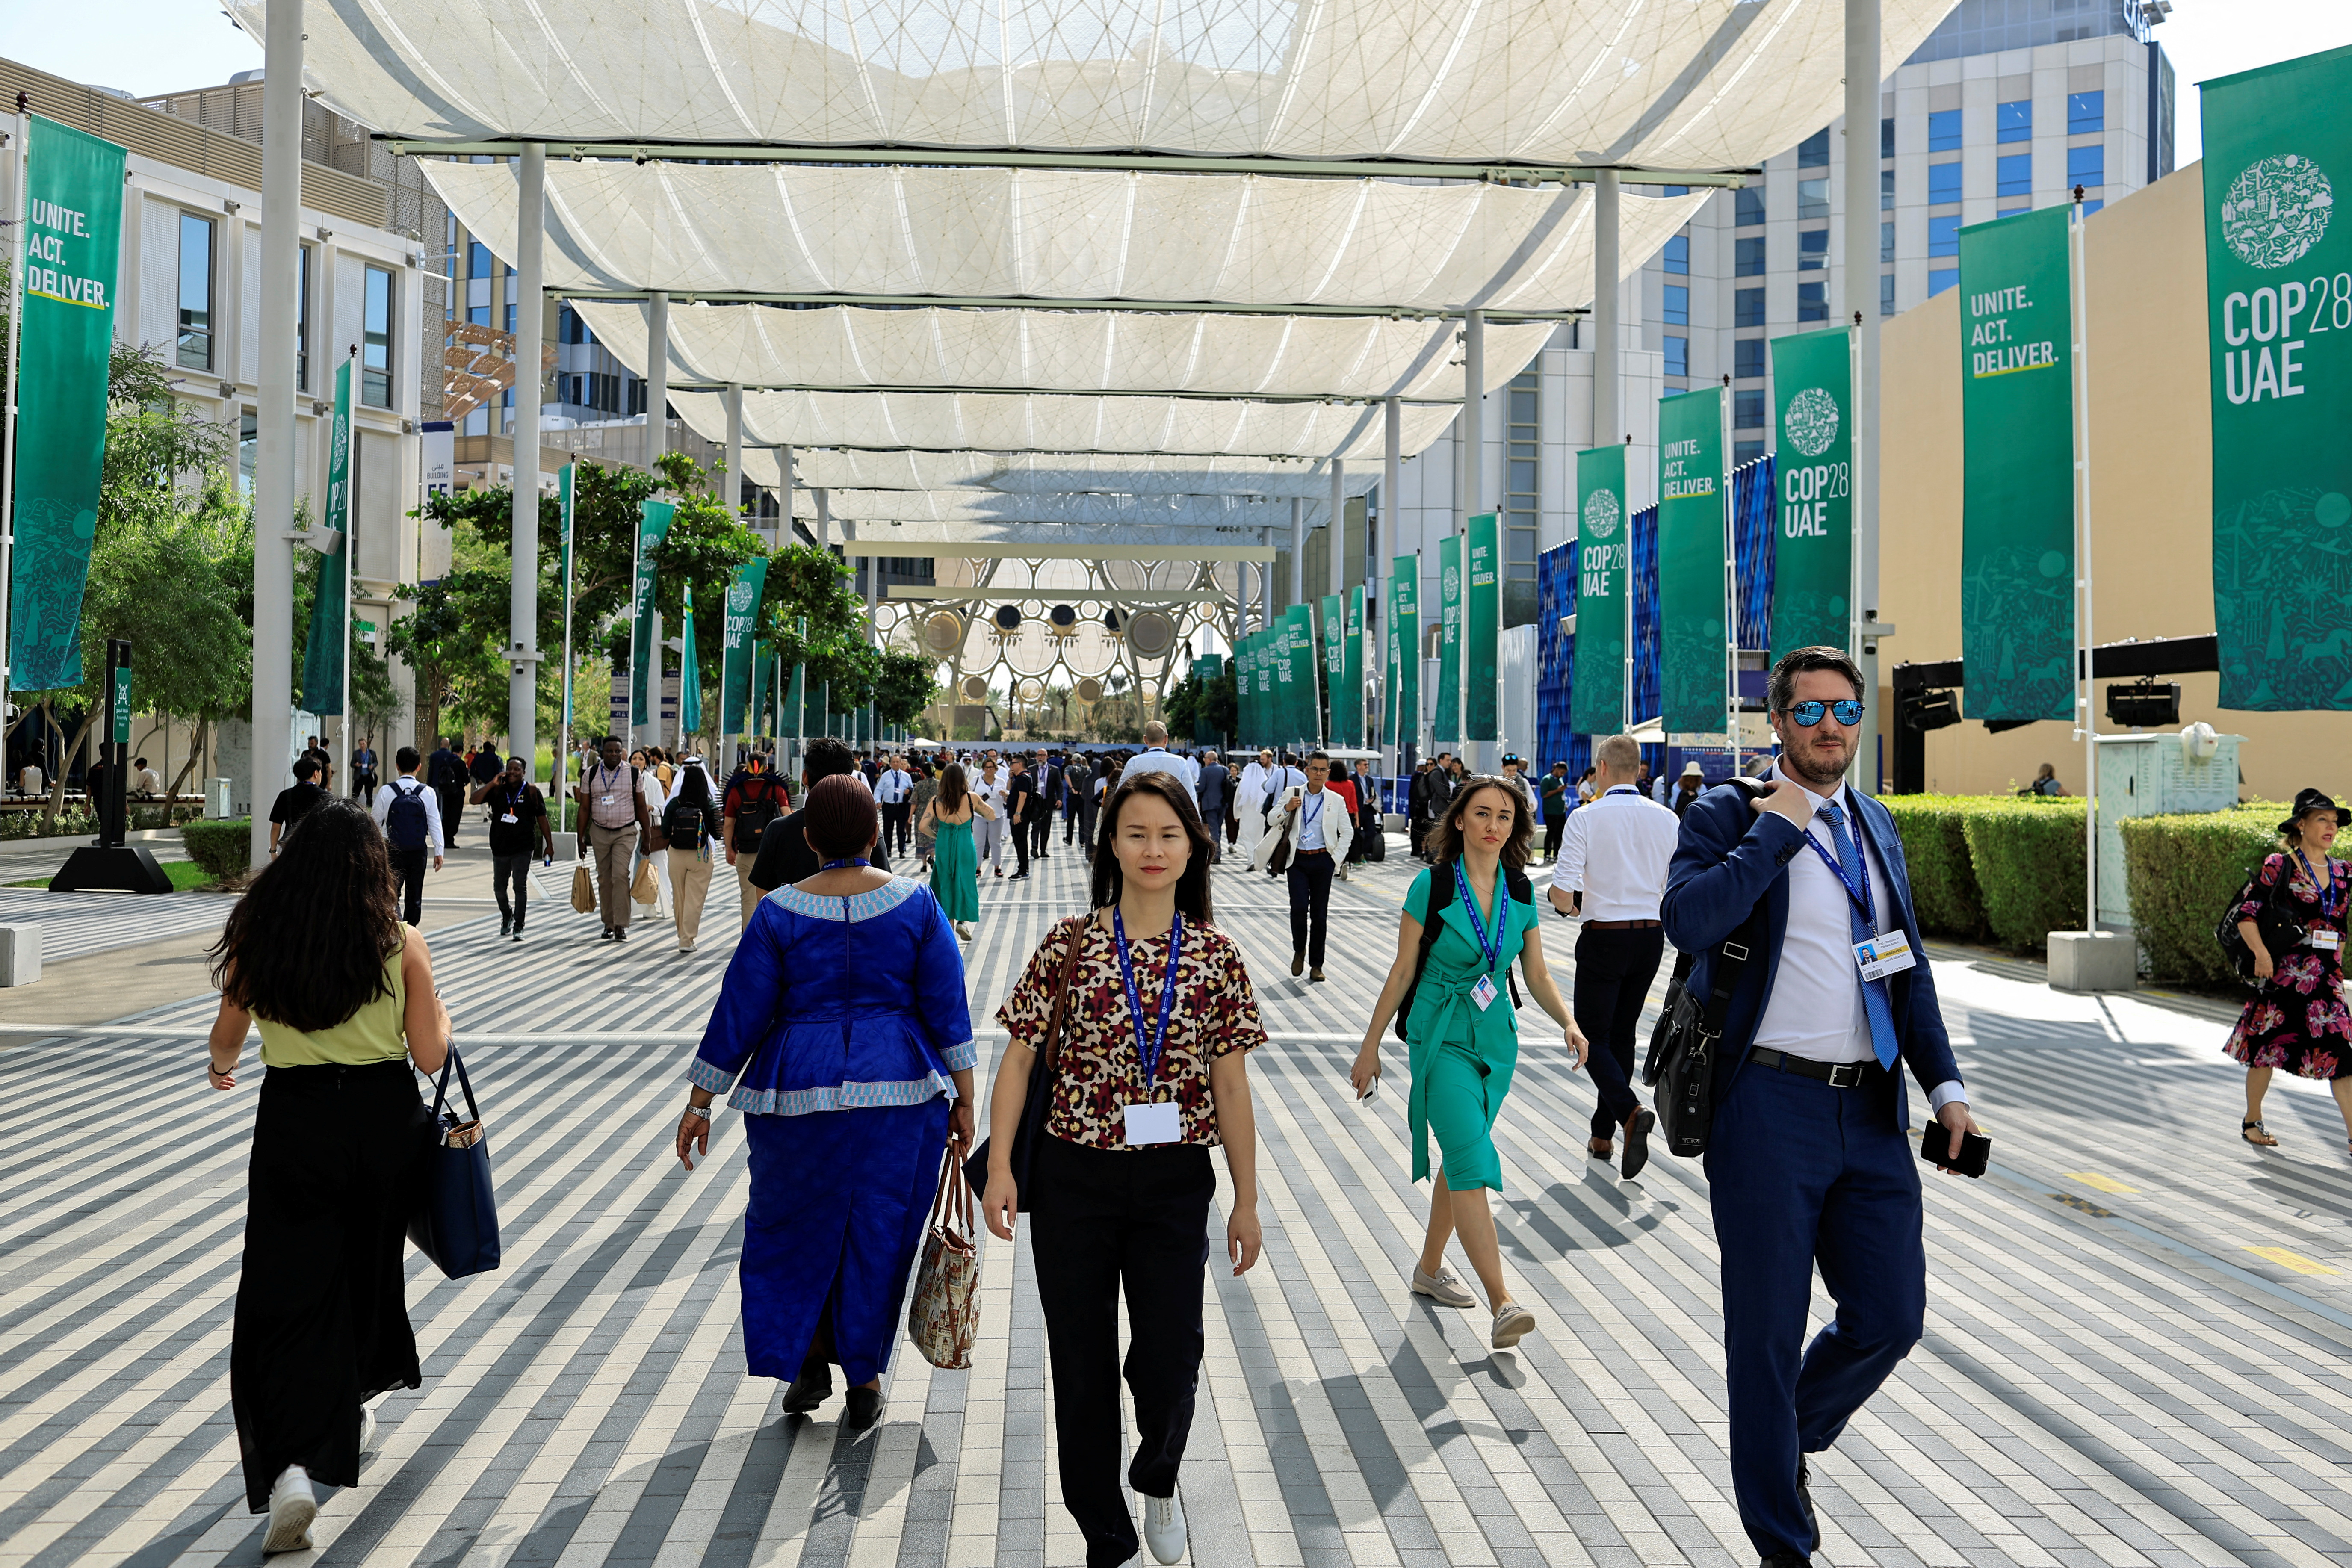 Delegados caminham na Expo City de Dubai durante a Conferência das Nações Unidas sobre Mudanças Climáticas (COP28) em Dubai